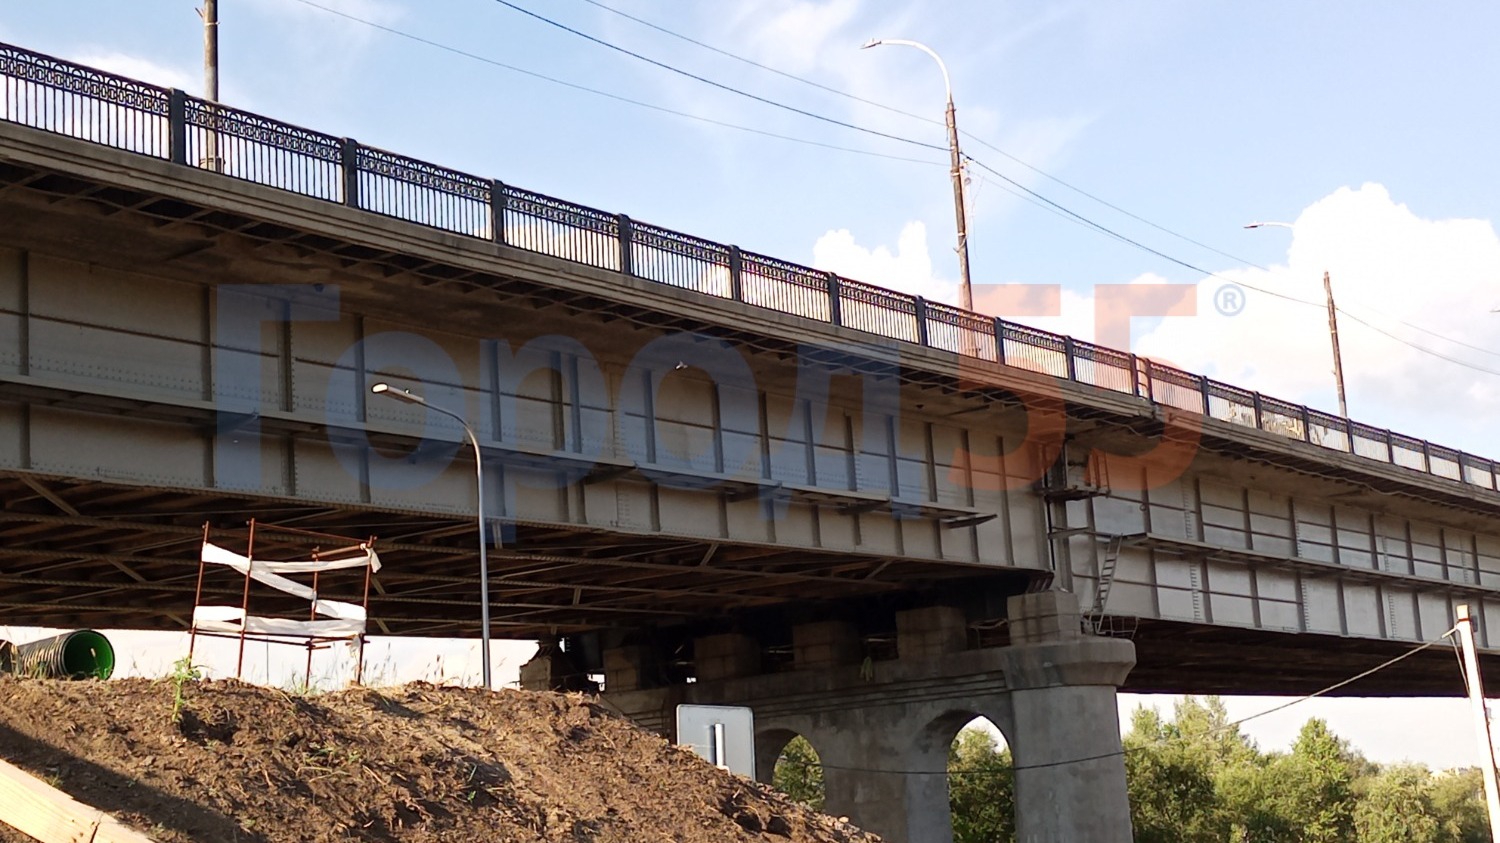 РПродолжается реконструкция моста